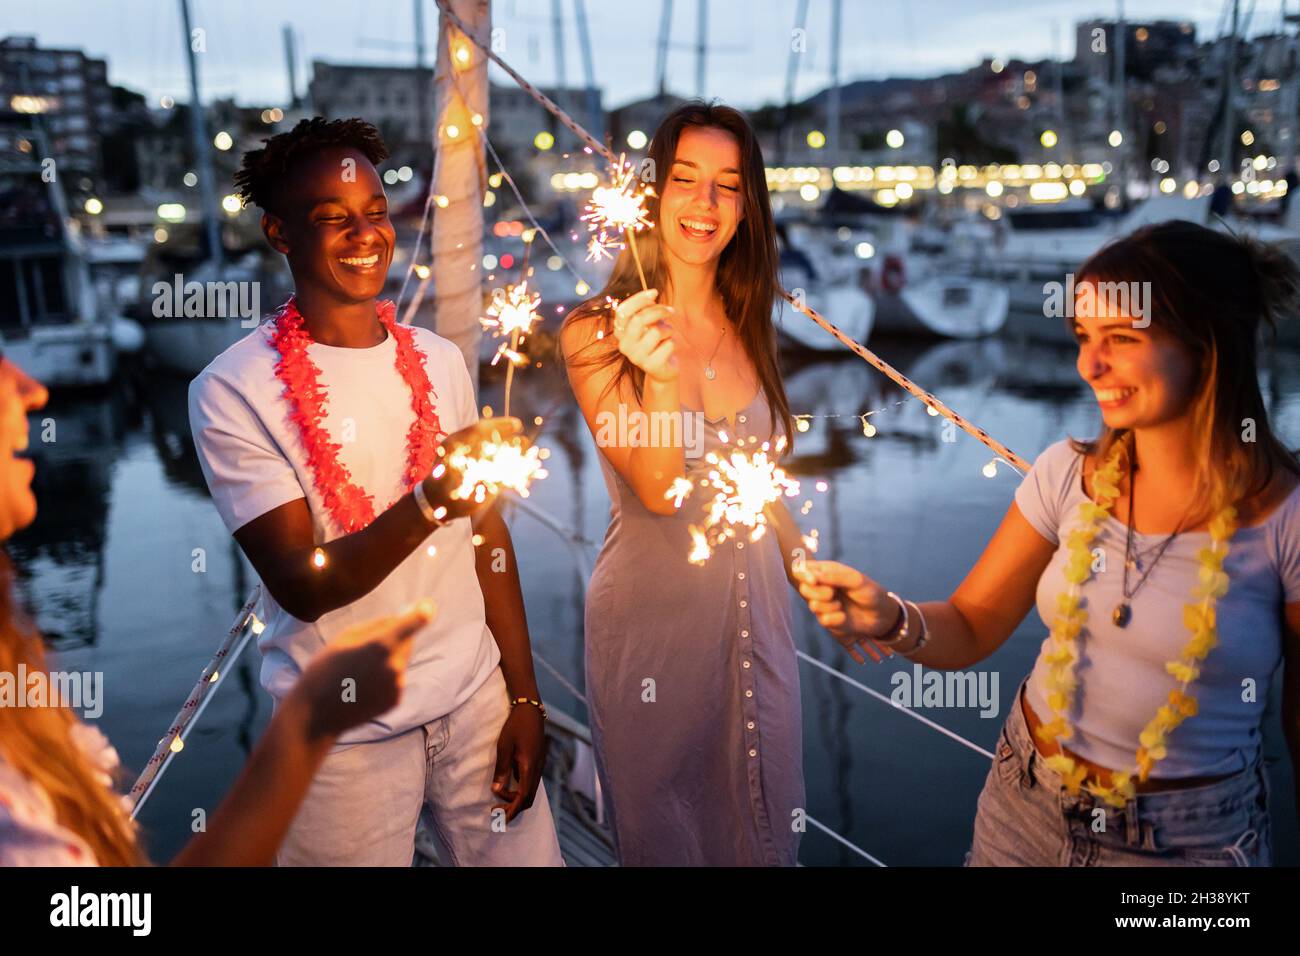 Gruppe von Menschen, die Spaß haben und Neujahr mit Wunderkerzen auf einem Boot feiern - Happy Lifestyle Konzept - Fokus auf afrikanischen Mann Stockfoto